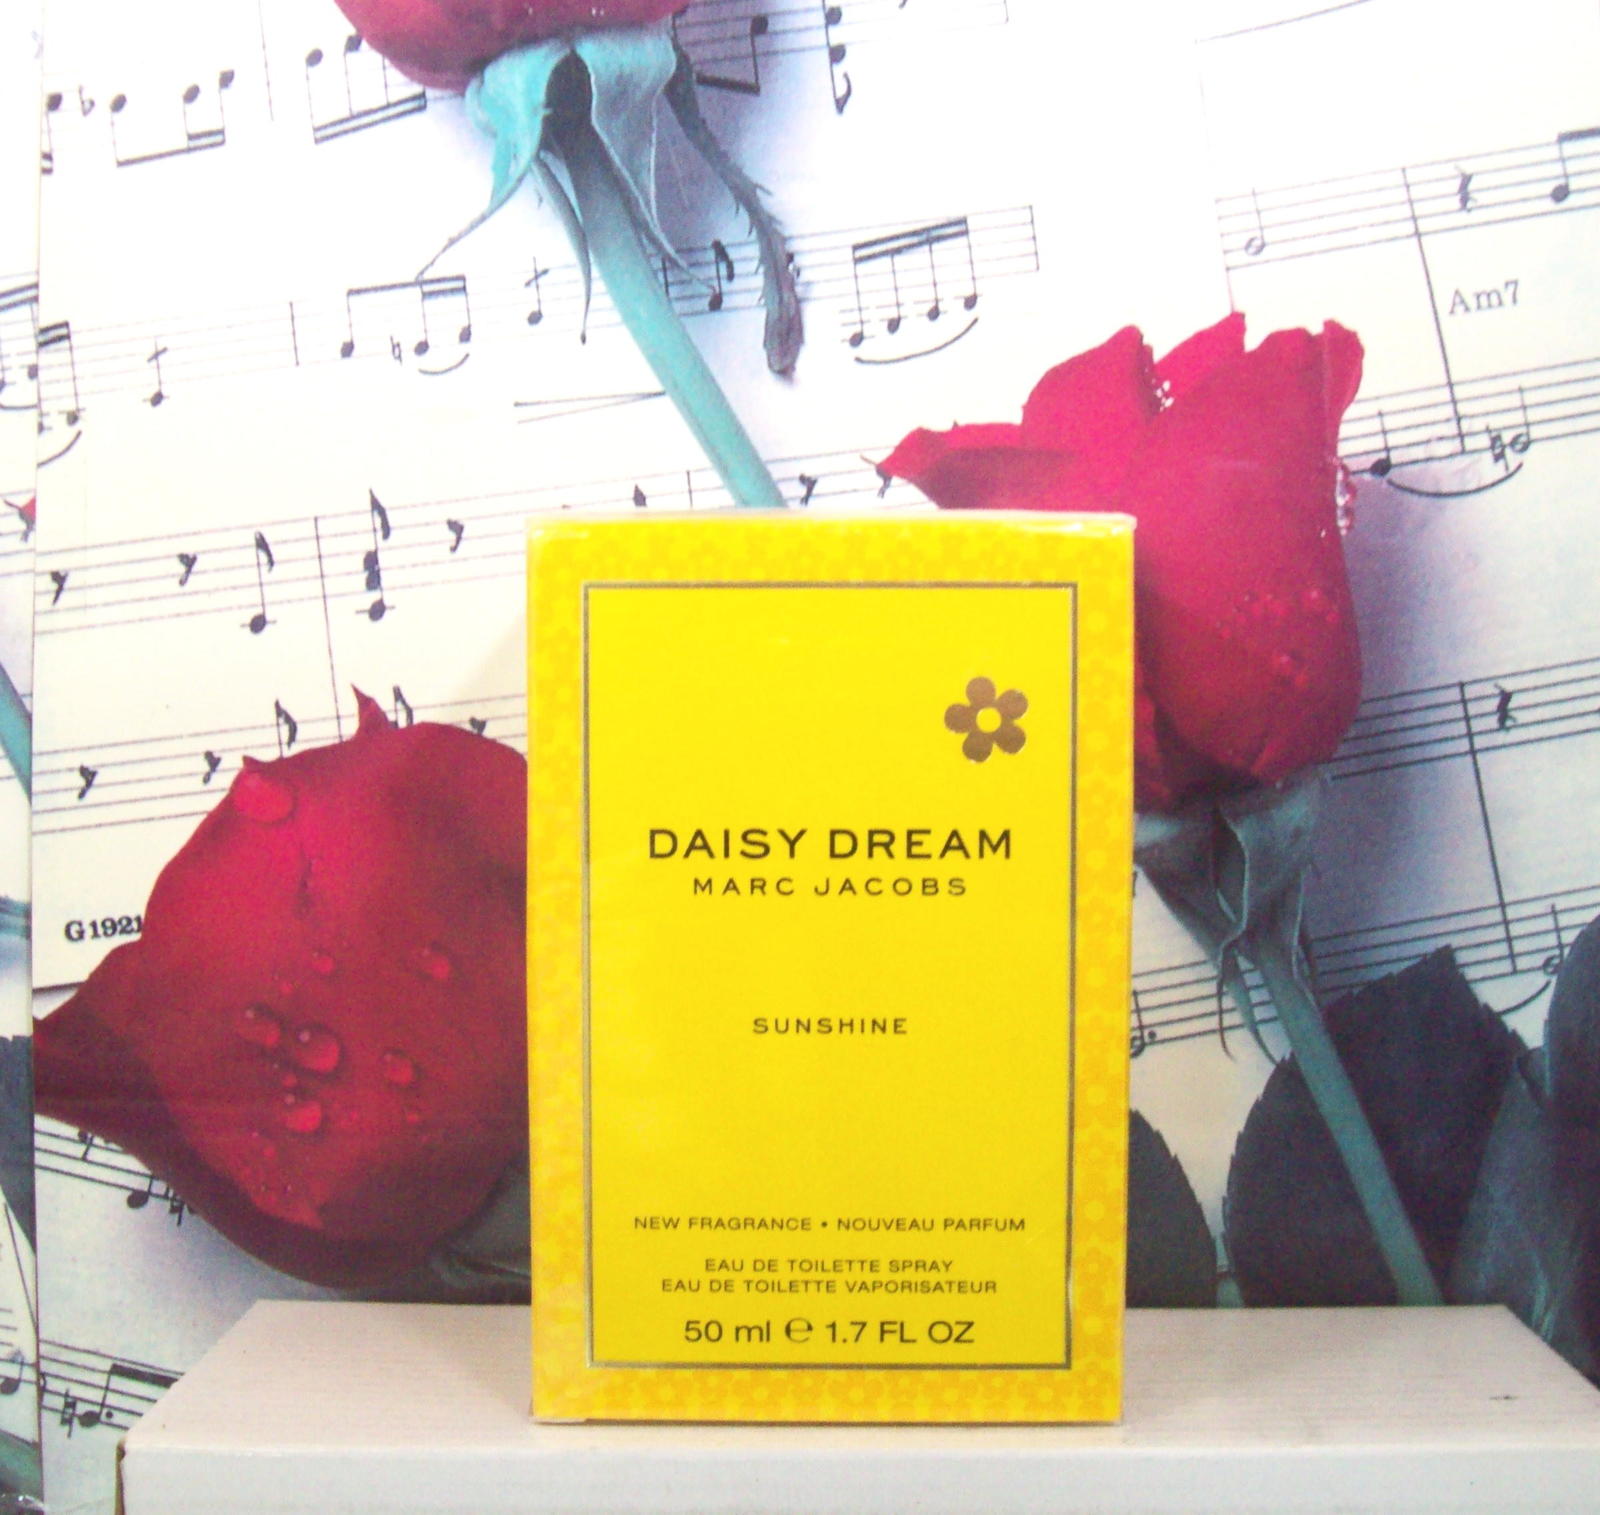 Daisy Dream Sunshine By Marc Jacobs 1.7 OZ. EDT Spray - $149.99